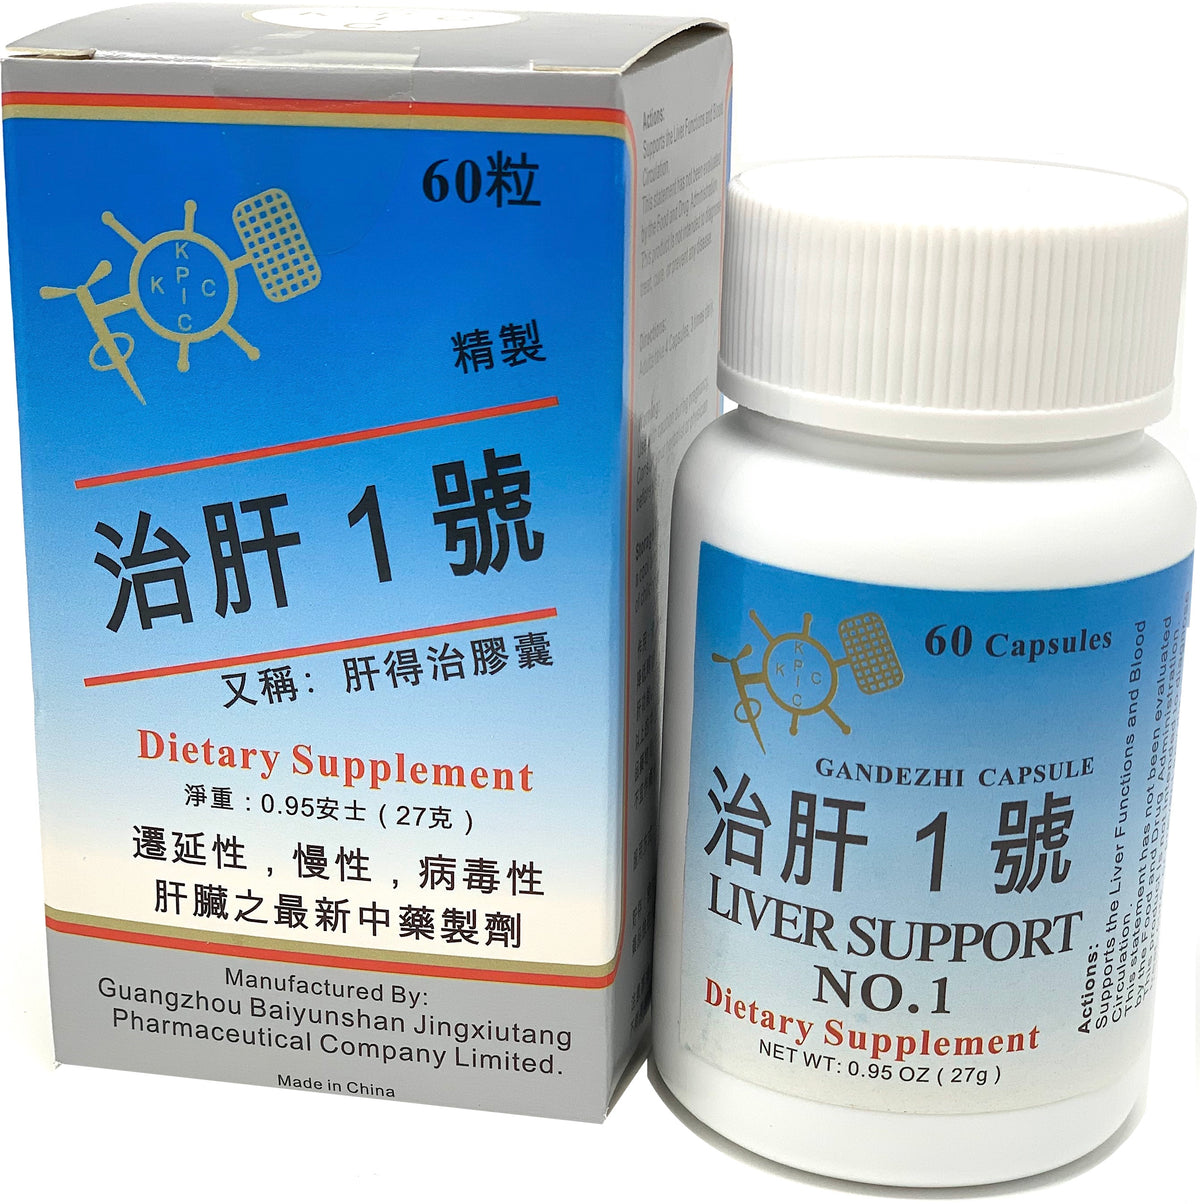 Liver Support NO. 1 (Gan De Zhi Capsule)